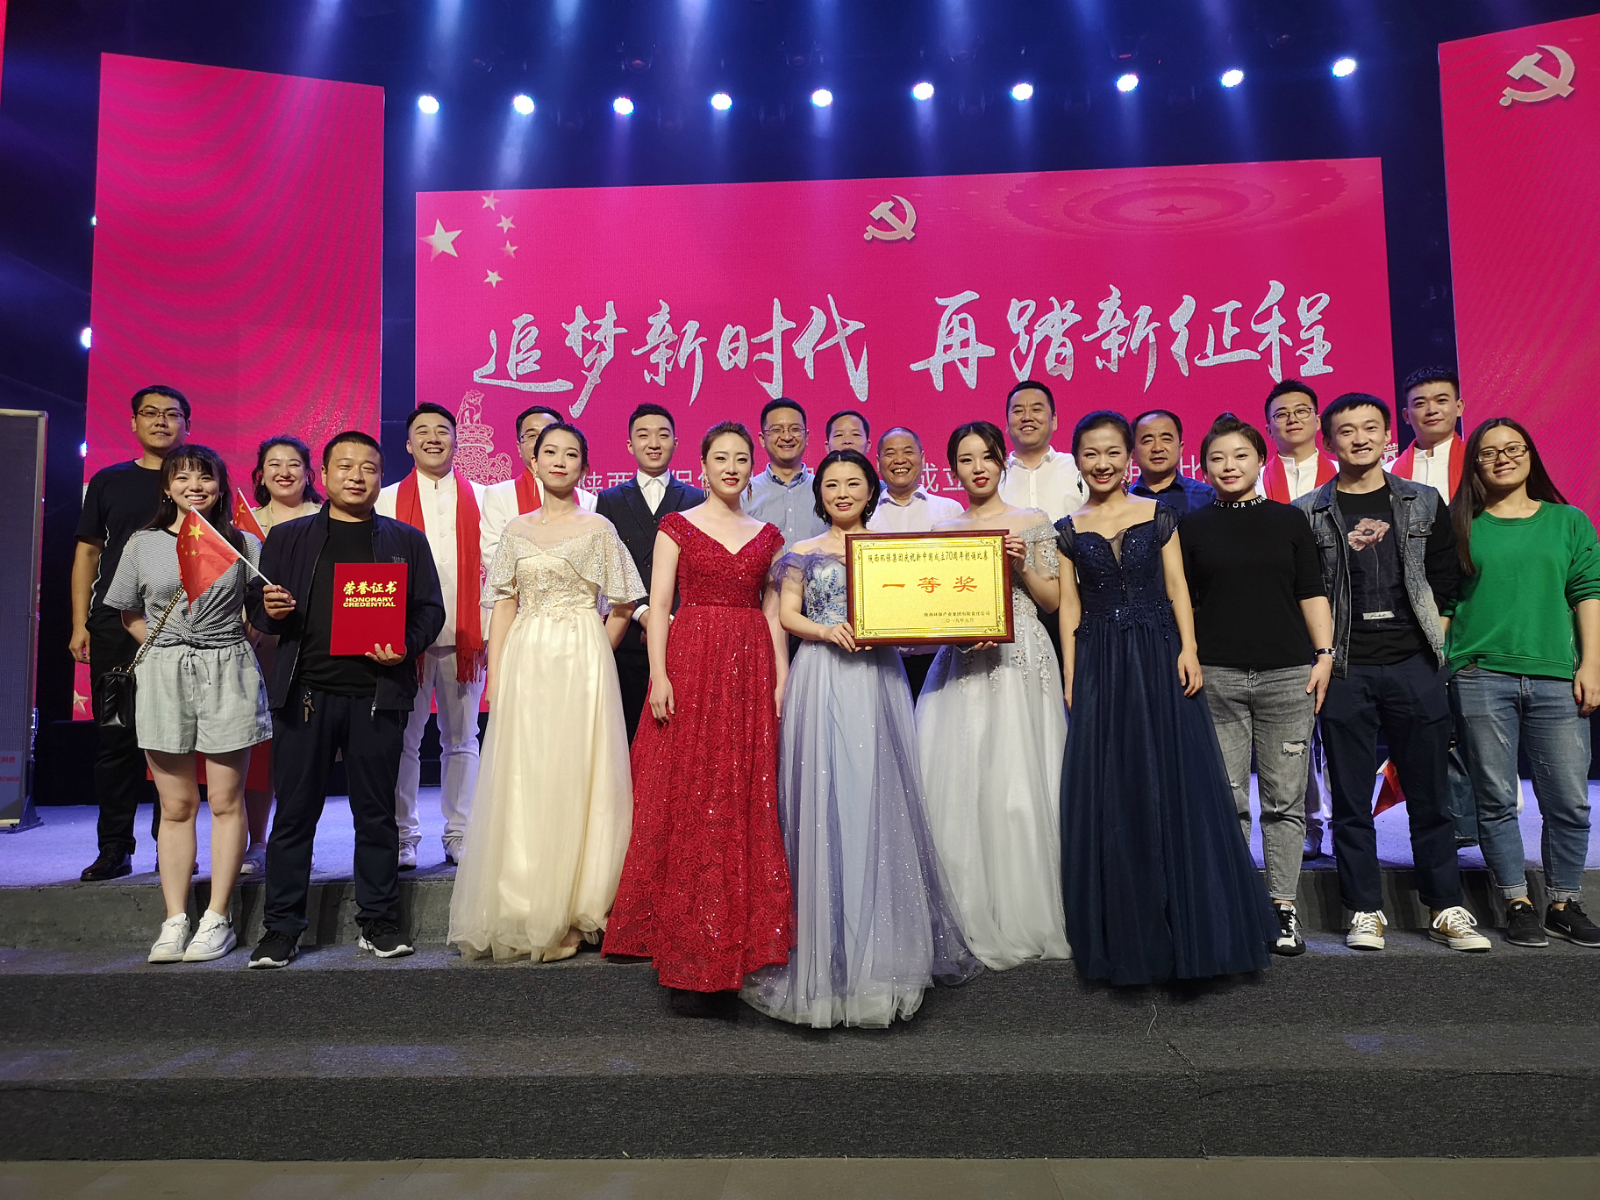 www.990990.com代表队荣获990990com藏宝阁庆祝新中国成立70周年朗诵比赛一等奖